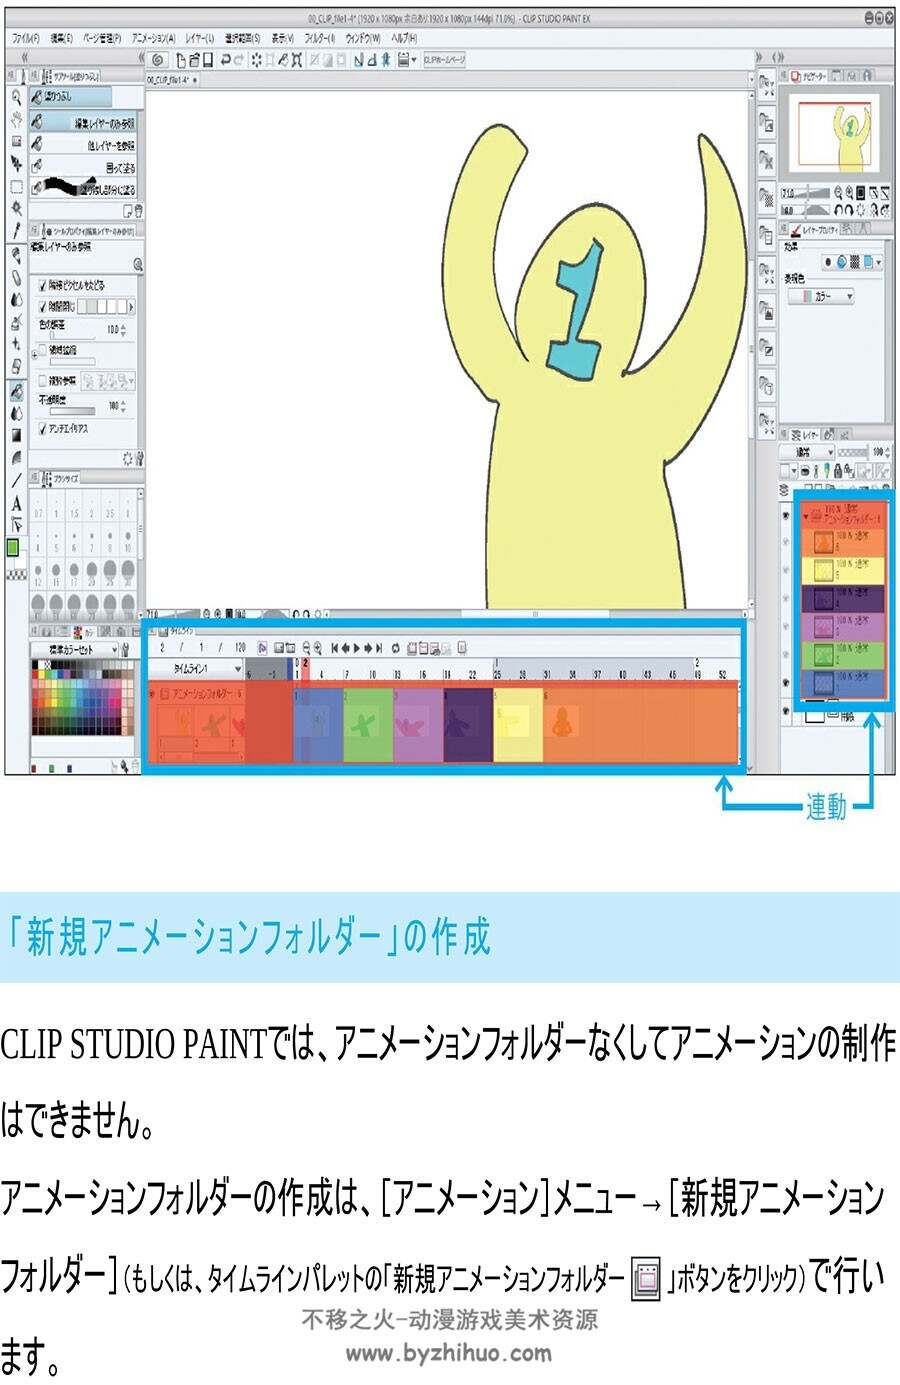 动画教学 CLIP STUDIO PAINT PRO EX制作动画 插画画动画教学